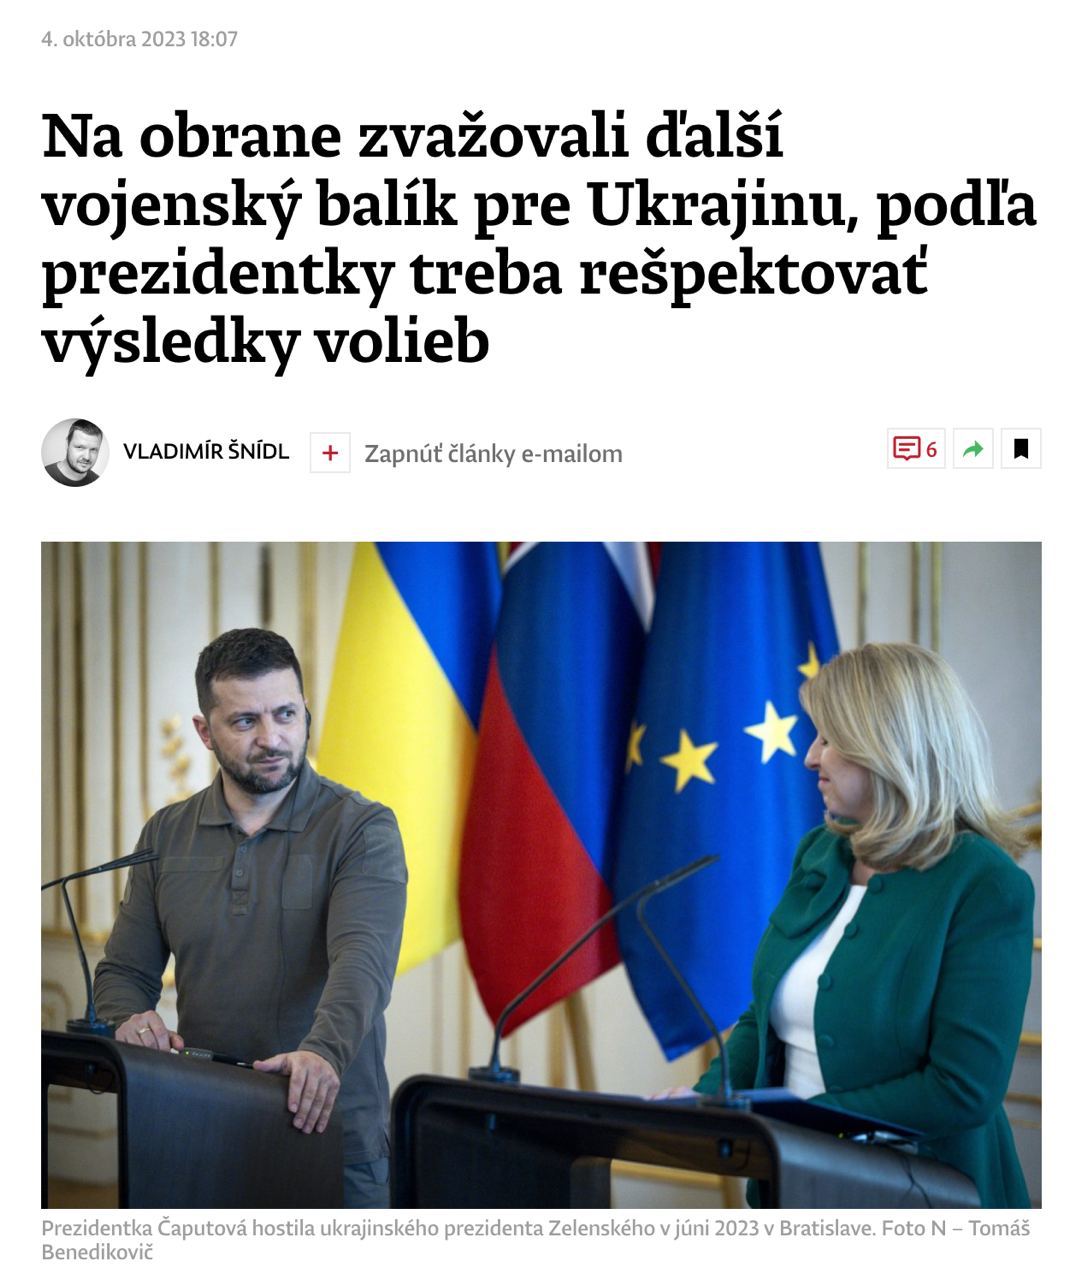 Словакия после выборов. Первая ласточка - обсуждается отказ военной помощи Украине